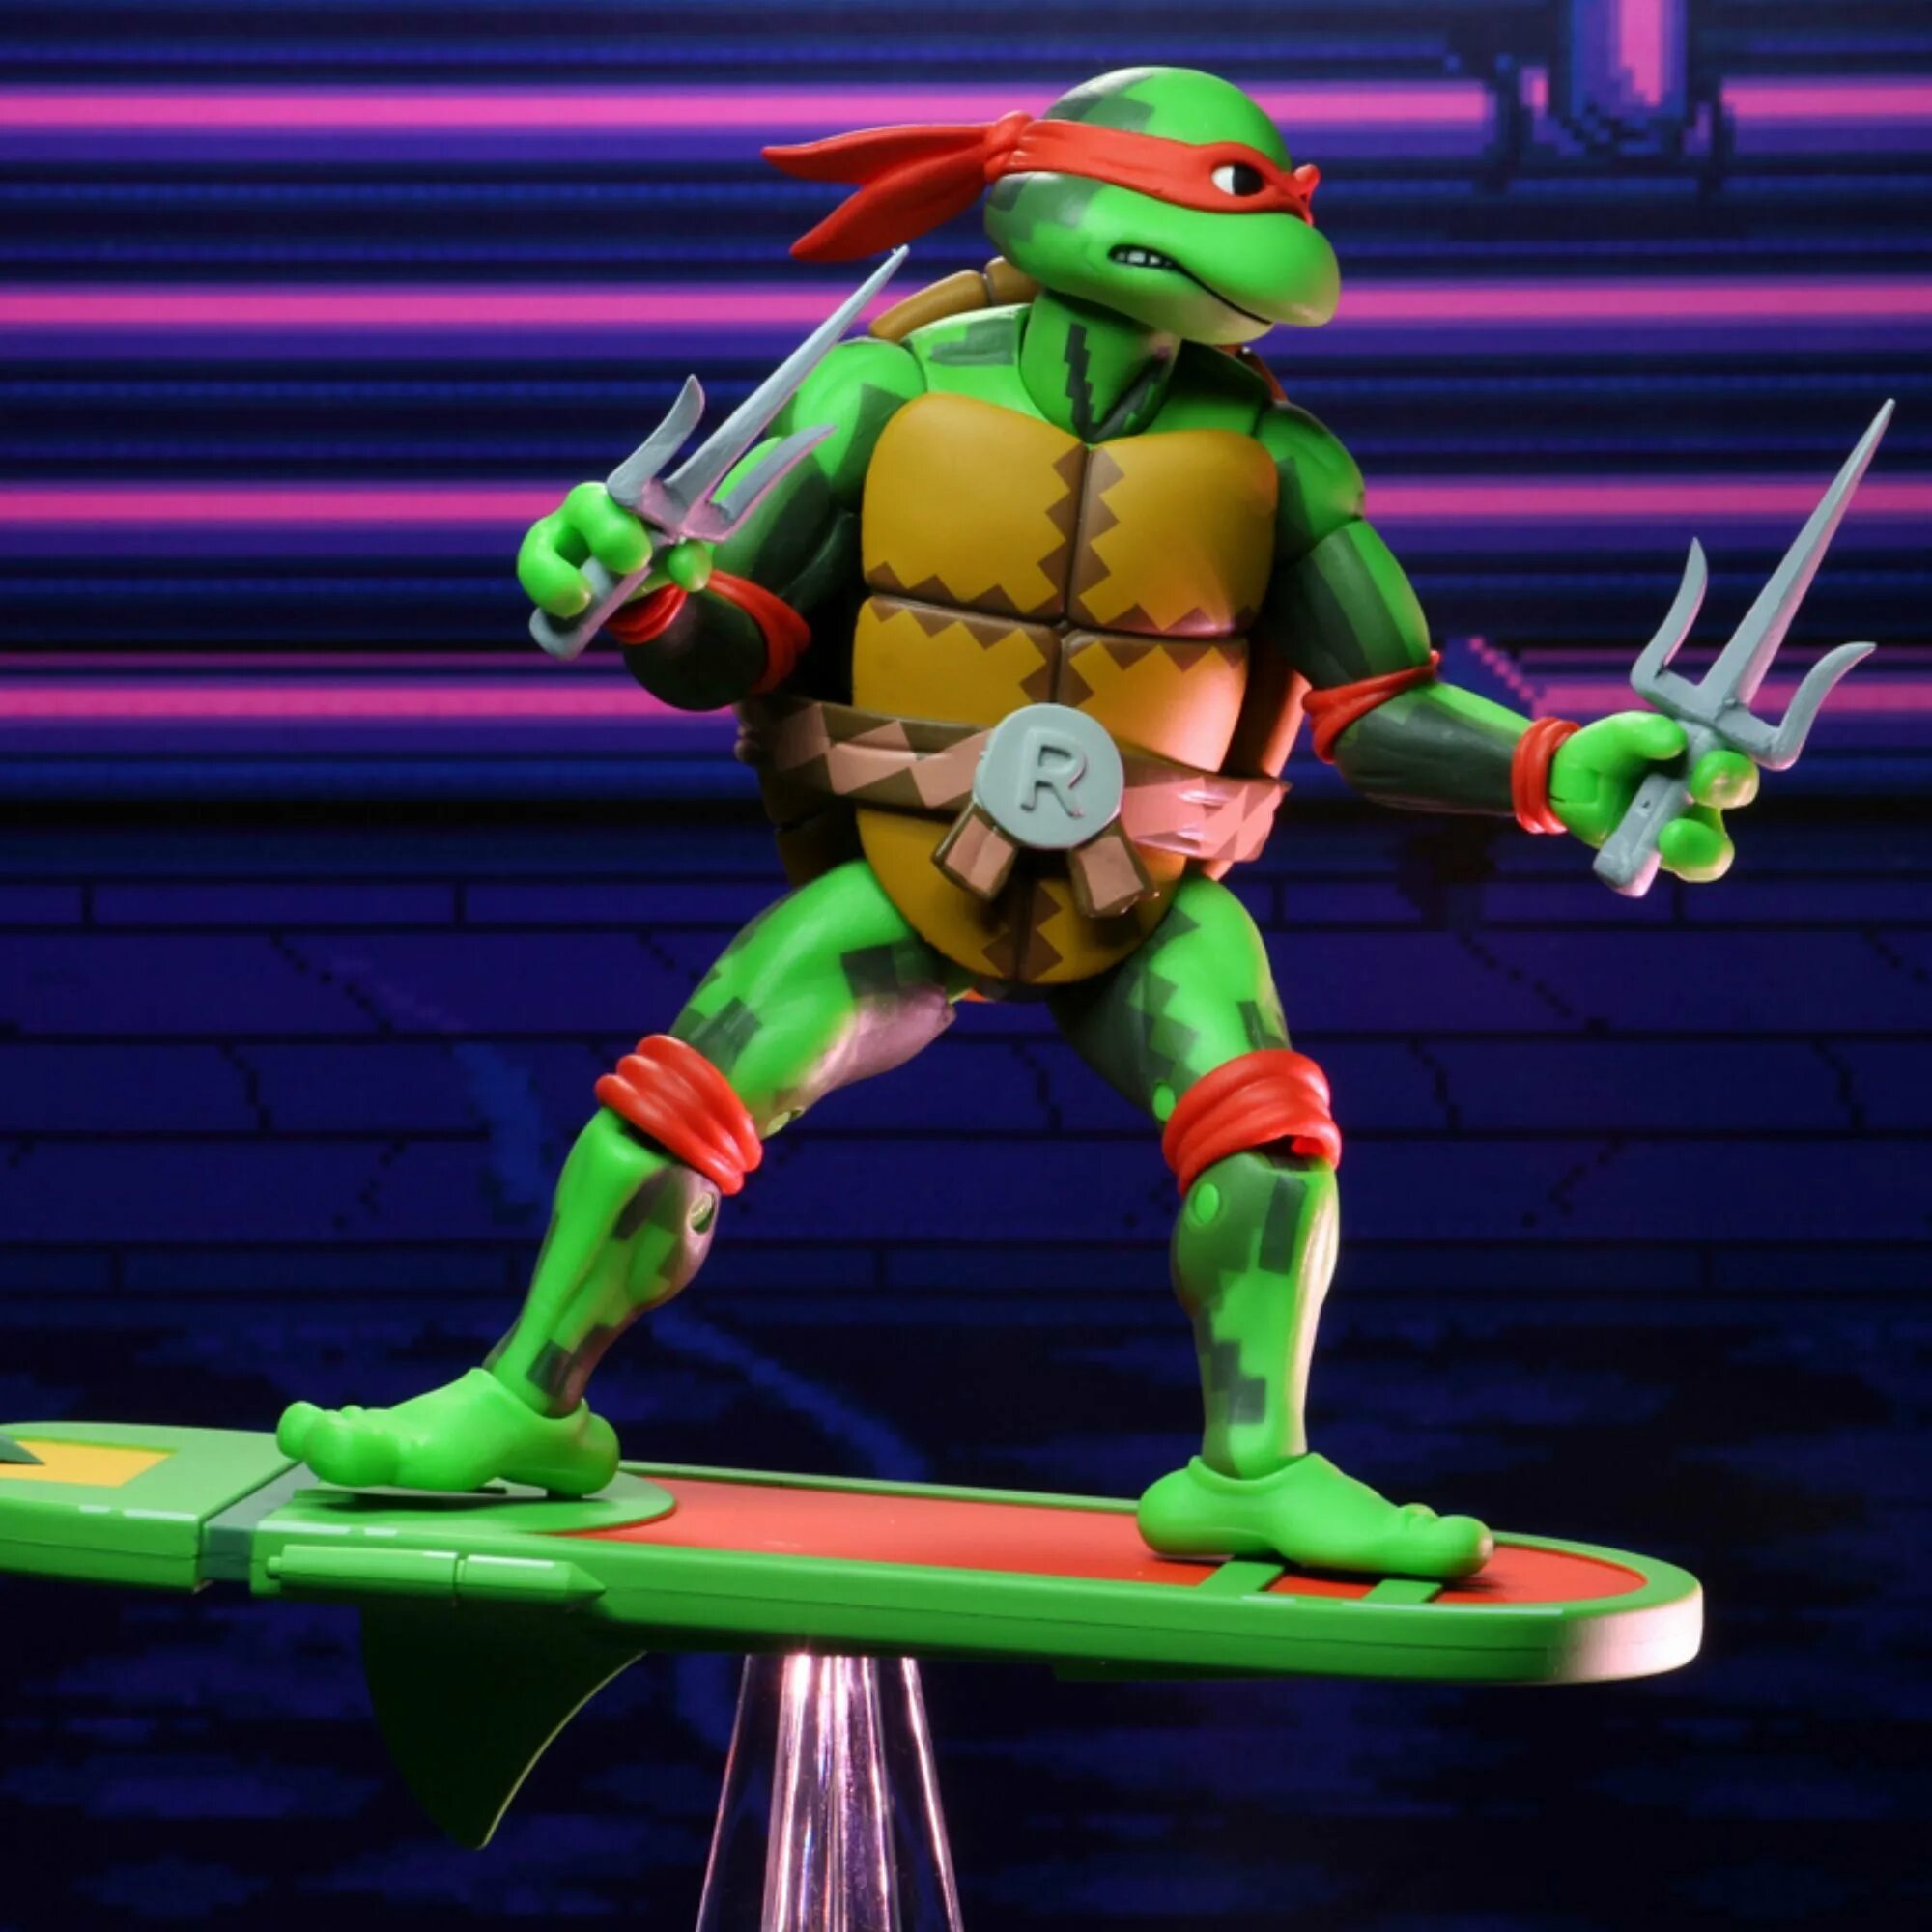 Tmnt time. NECA TMNT Черепашки ниндзя. Teenage Mutant Ninja Turtles in time. Teenage Mutant Ninja Turtles Turtles in time.